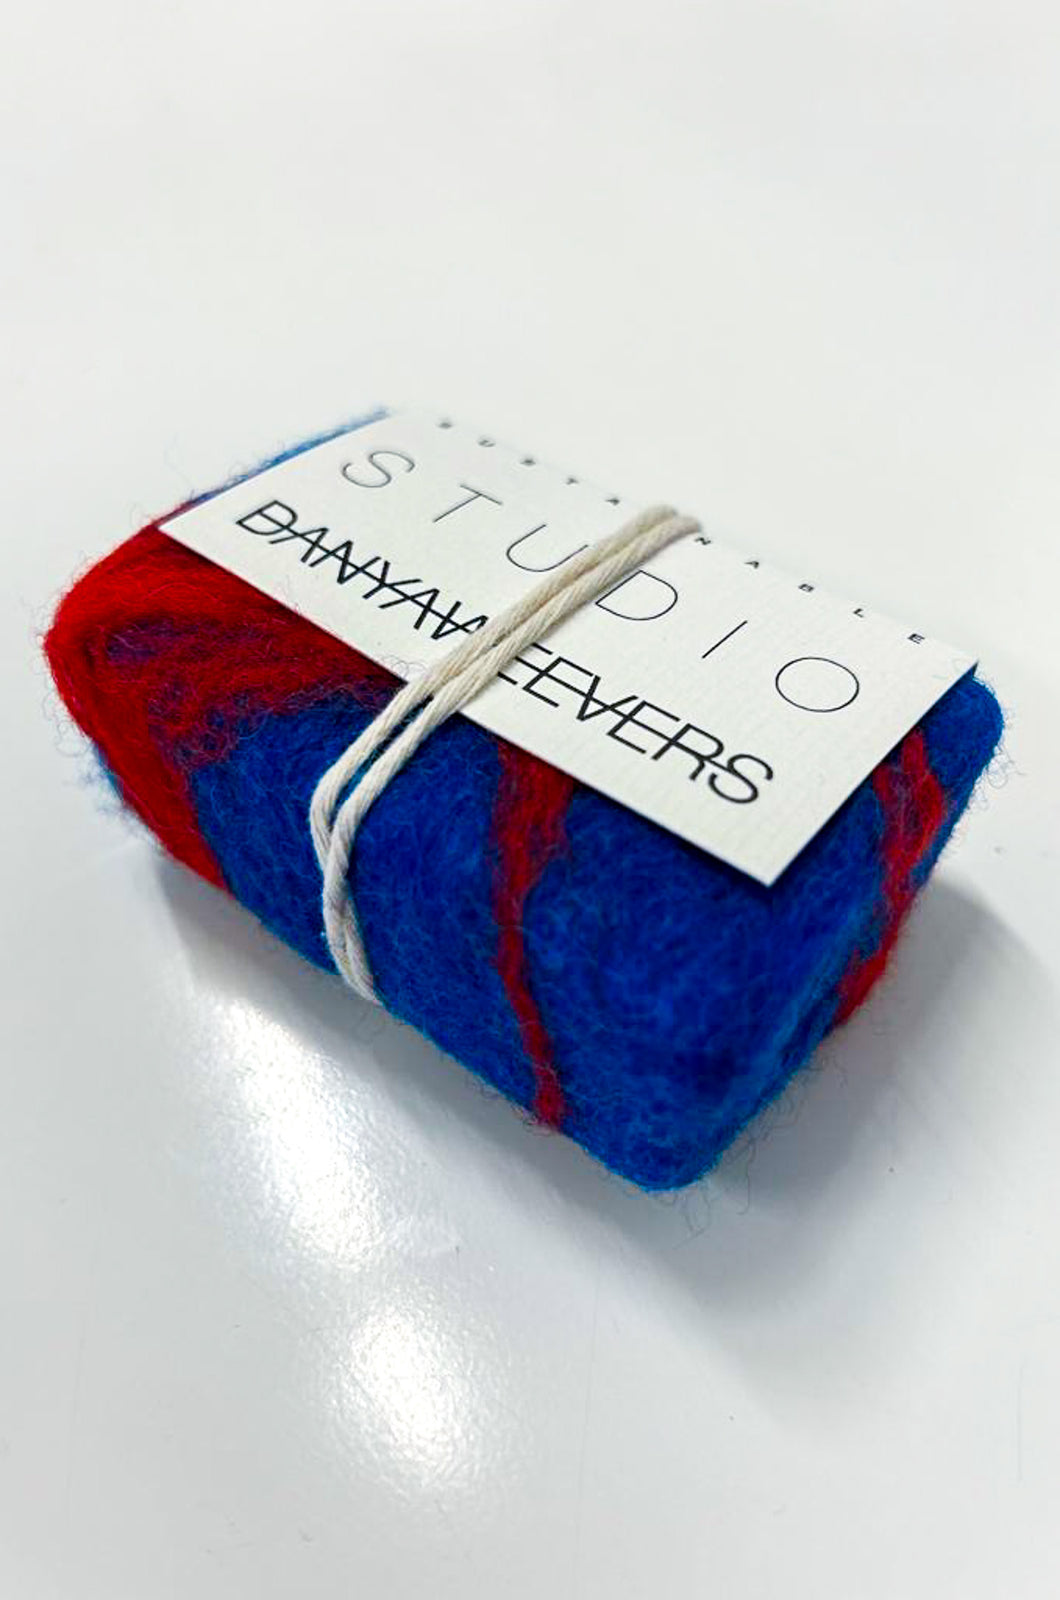 Bio soap + merino wool